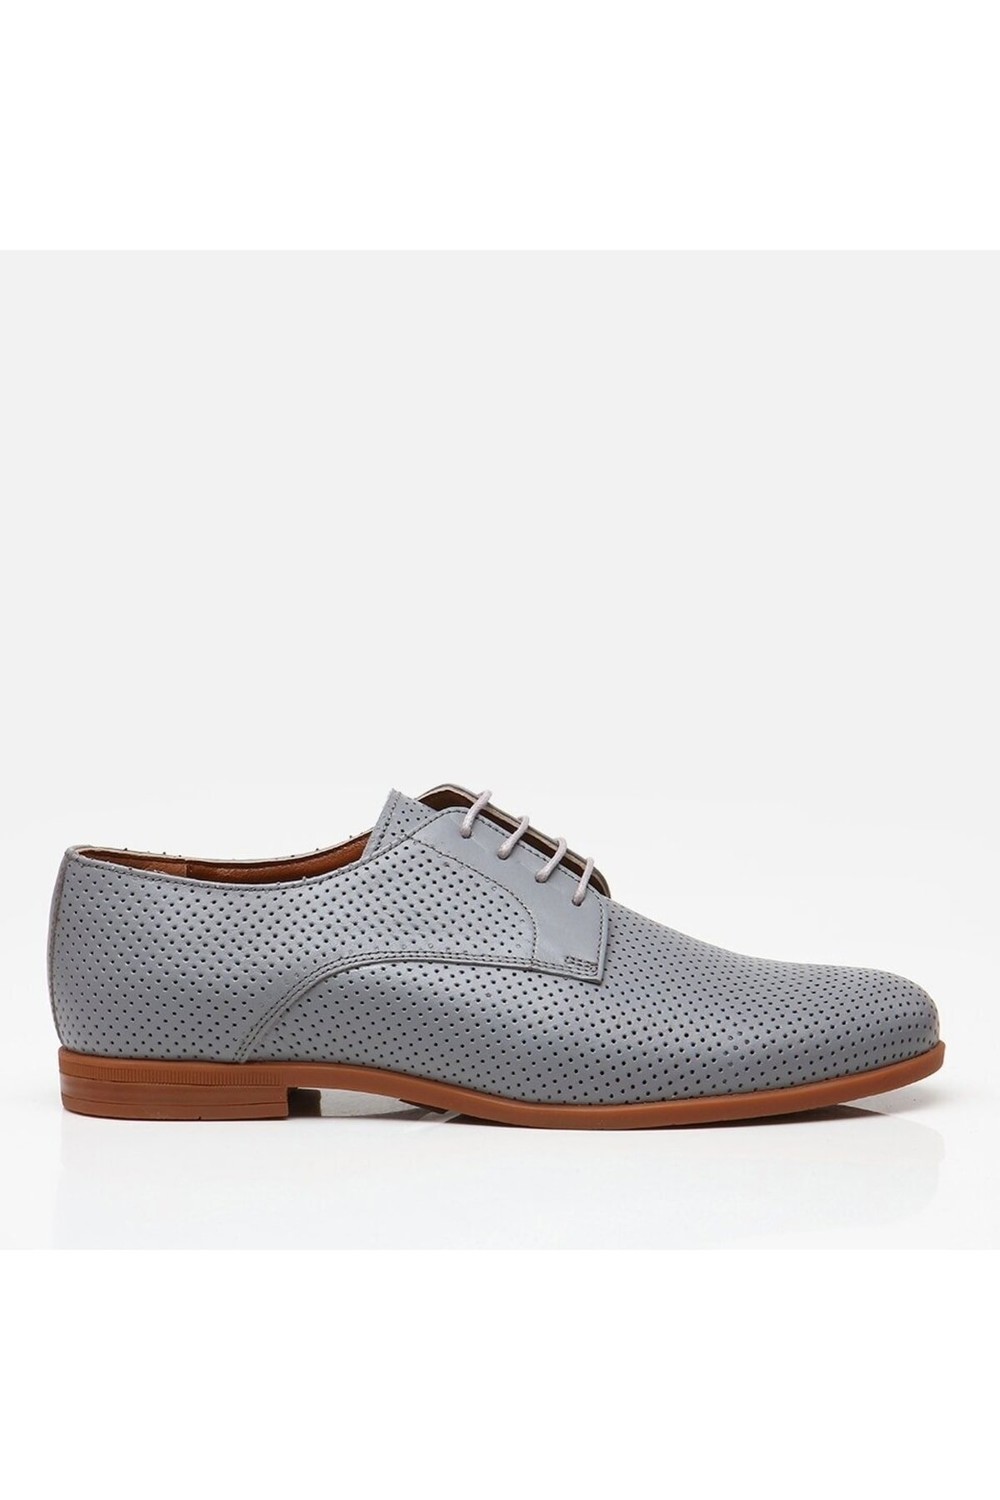 Hotiç Business Shoes - Gray - Flat